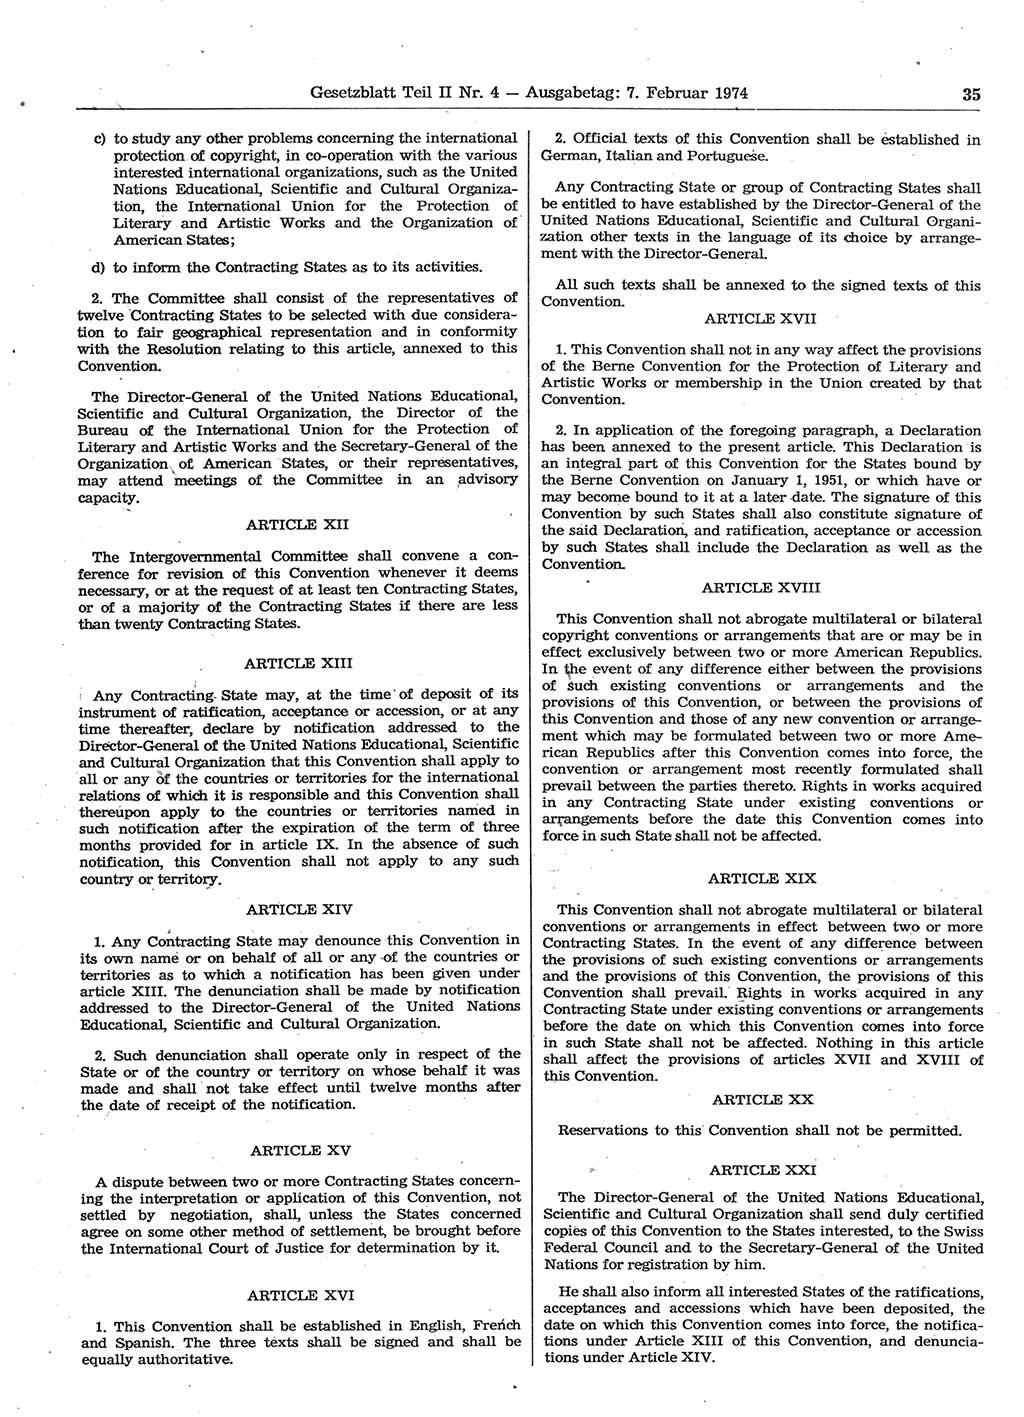 Gesetzblatt (GBl.) der Deutschen Demokratischen Republik (DDR) Teil ⅠⅠ 1974, Seite 35 (GBl. DDR ⅠⅠ 1974, S. 35)